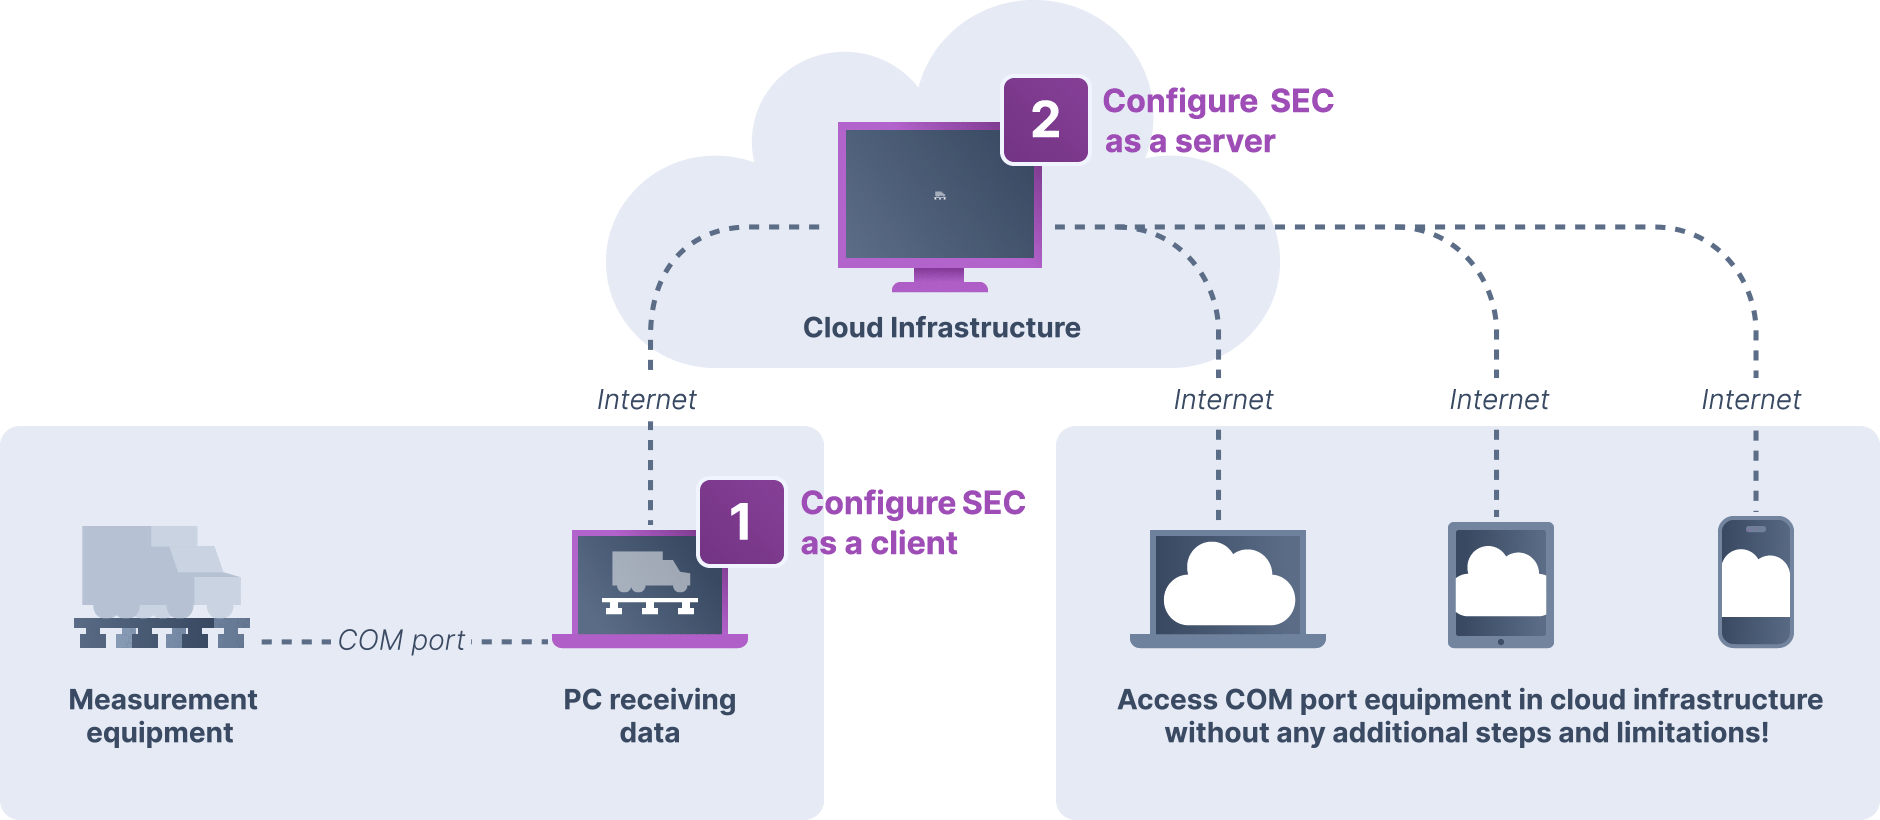 En savoir plus sur le logiciel série sur LAN et sur la façon dont vous pouvez l’utiliser dans une infrastructure cloud.